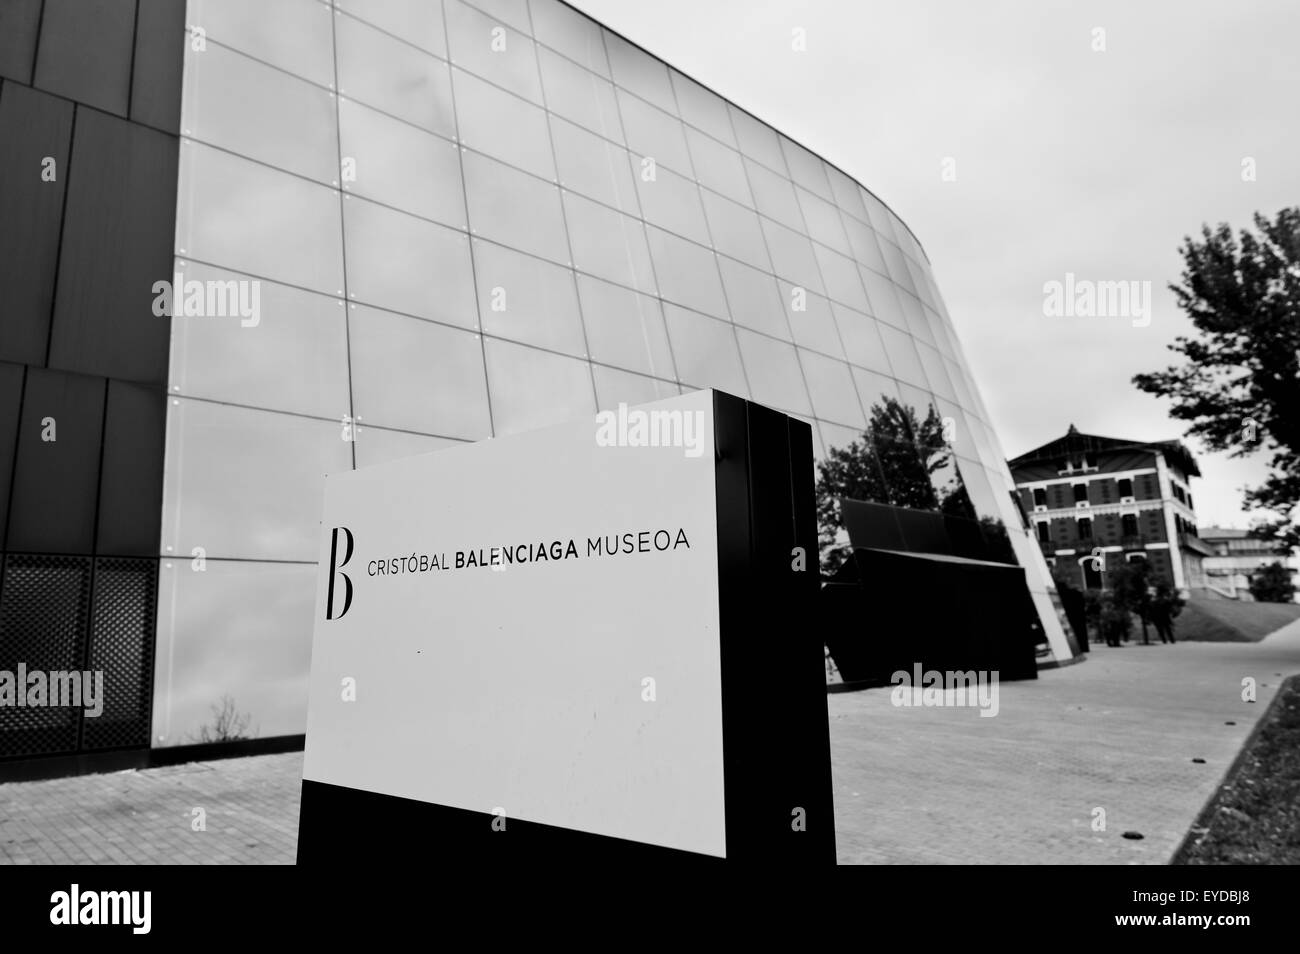 Cristobal Balenciaga Museum, Getaria, Basque Country, Spain Stock Photo -  Alamy